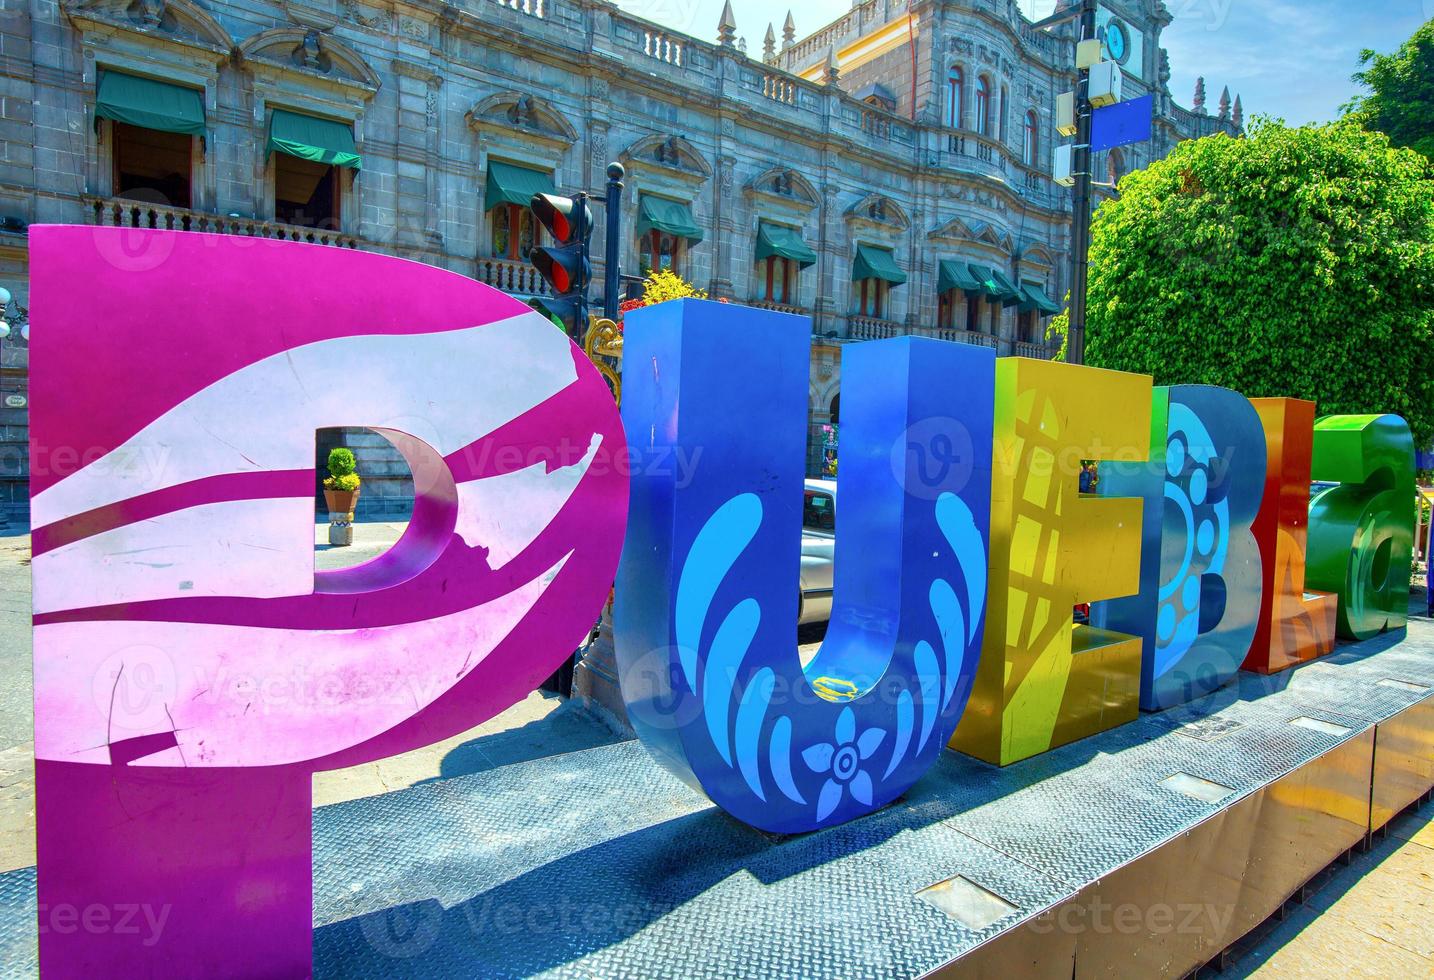 färgglada puebla gator och kolonial arkitektur i zocalo historiska stadskärna foto